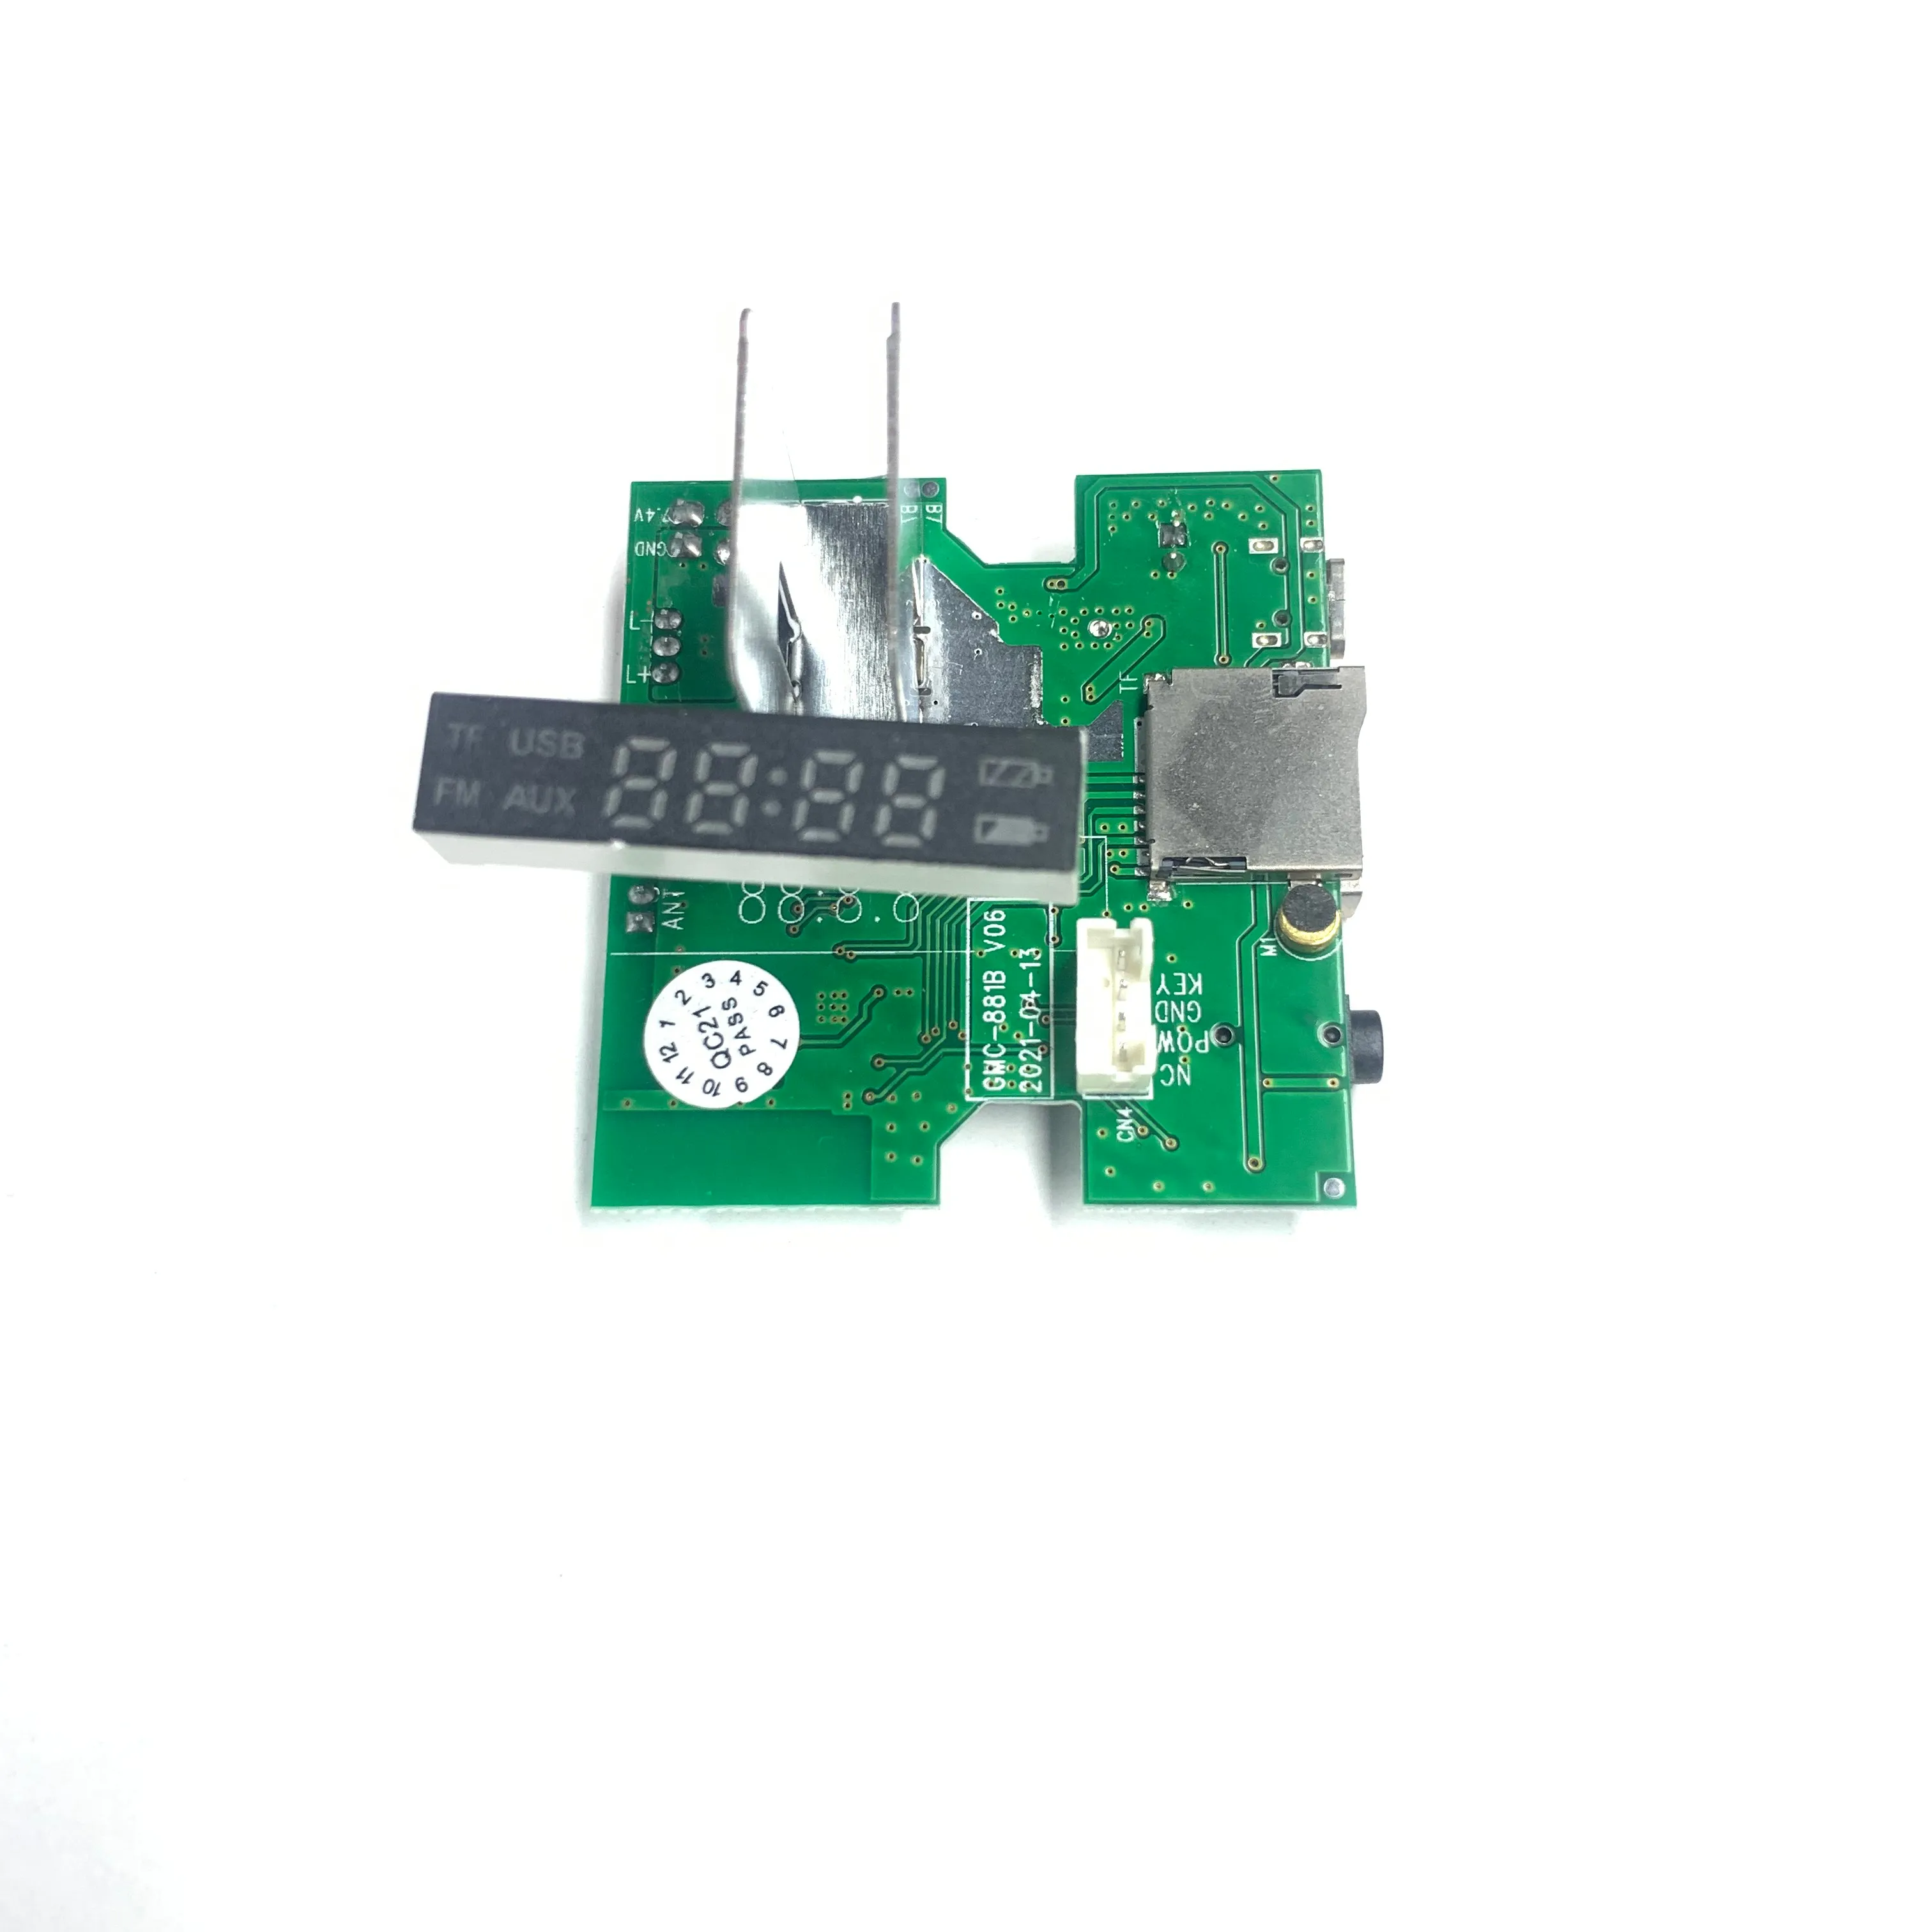 MP3 müzik çalar taşınabilir ses yüksek performanslı PBC üreticisi G2 oyuncu LED dekoder ses kartı PCB kartı